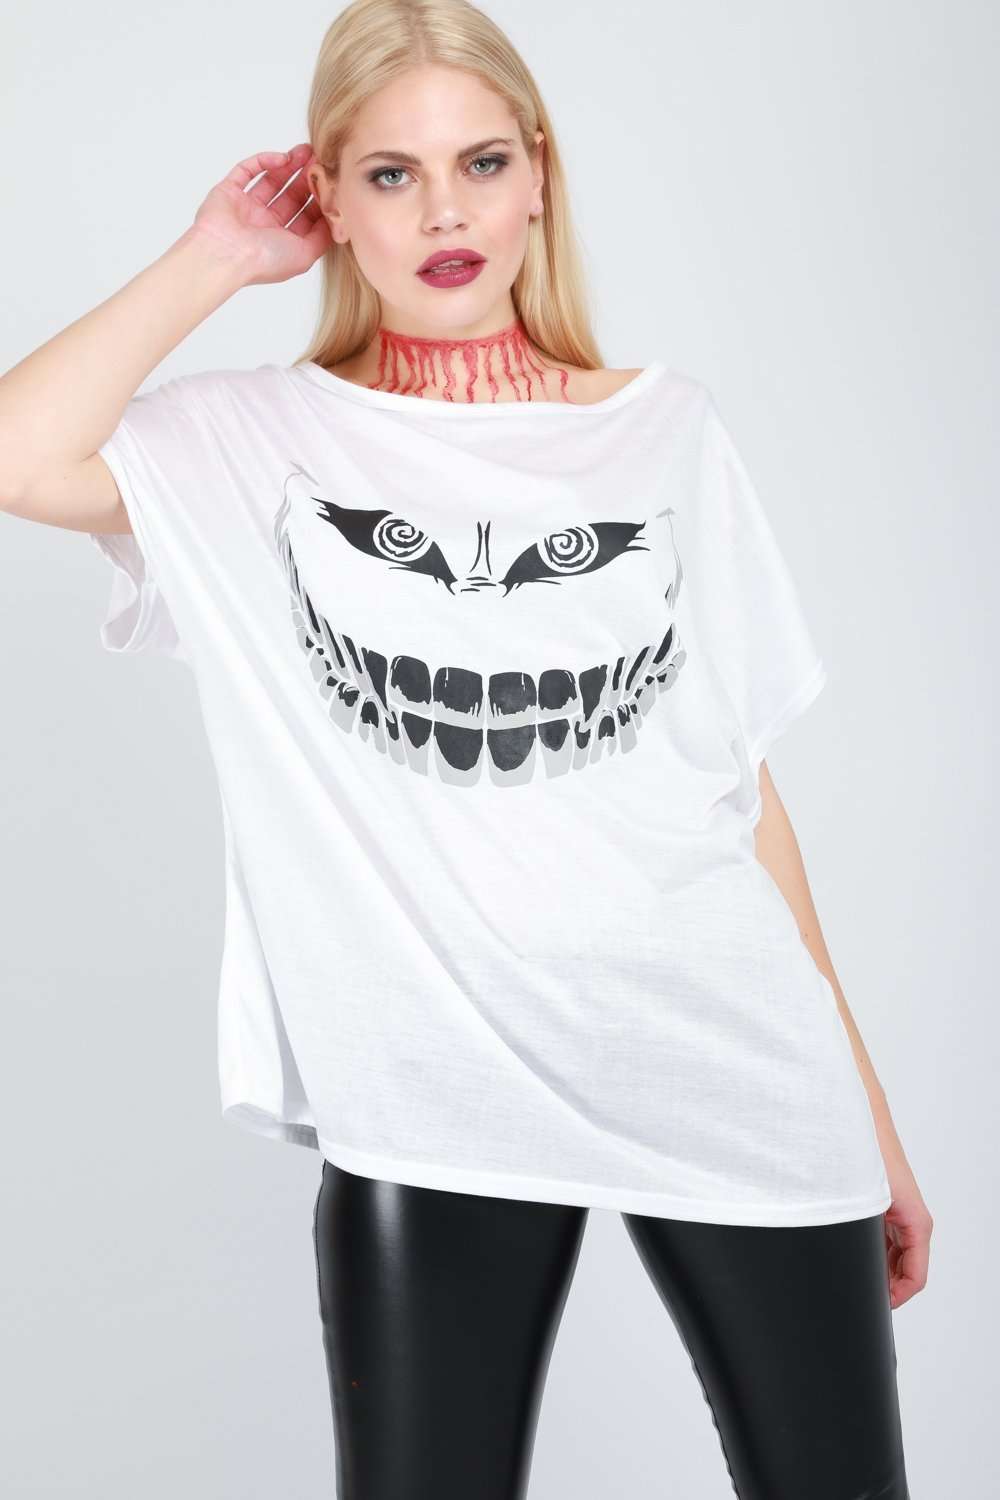 Oversized Scary Smile Baggy Halloween Tshirt - bejealous-com